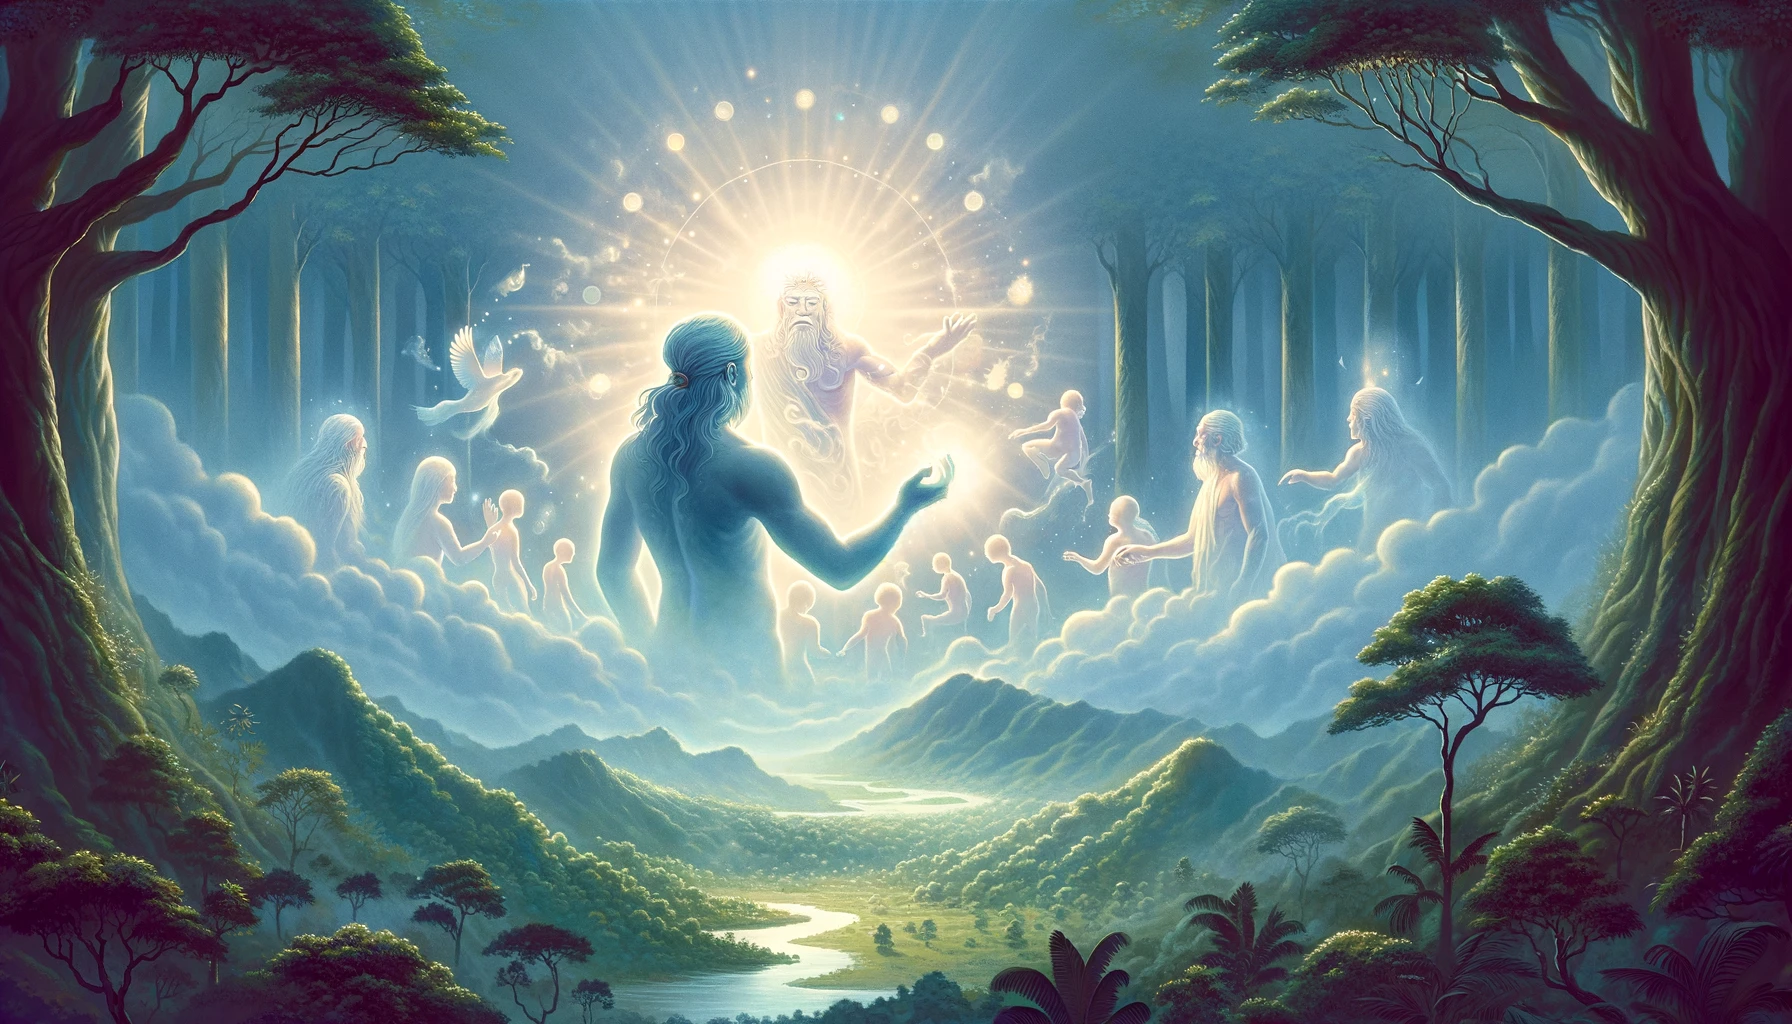 Ilustración del espíritu Jakairá, una figura nebulosa, asistiendo en la creación de los primeros humanos, rodeado de una suave niebla luminosa en un bosque.